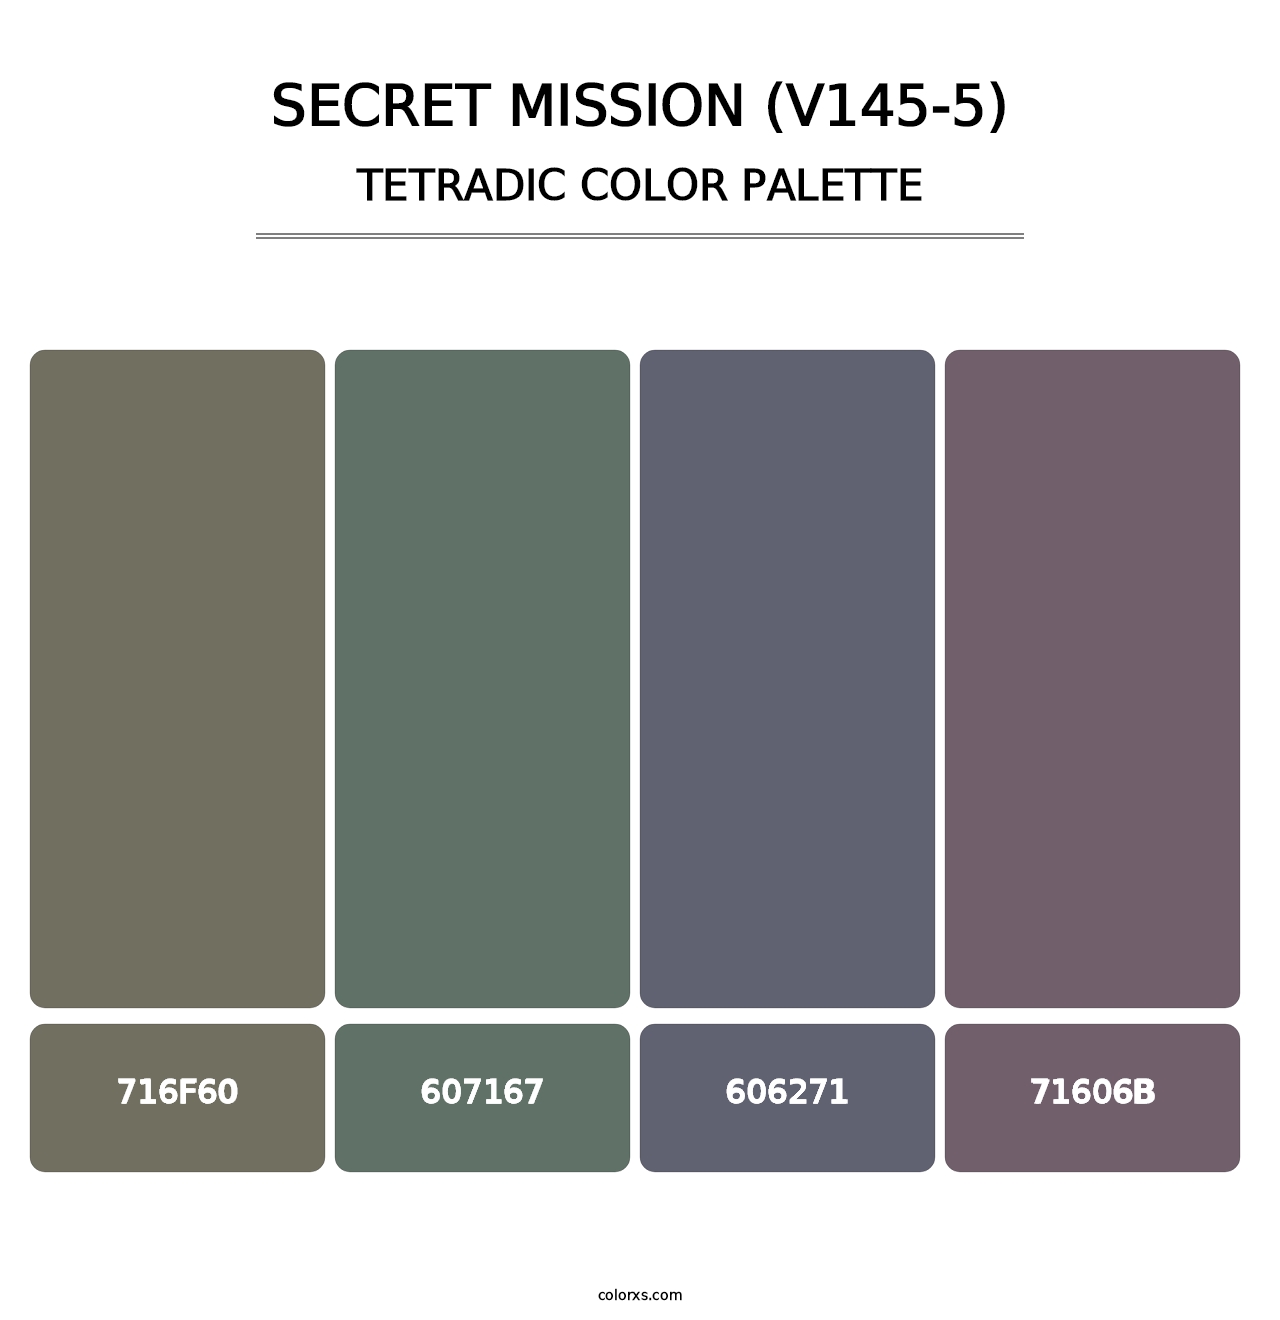 Secret Mission (V145-5) - Tetradic Color Palette